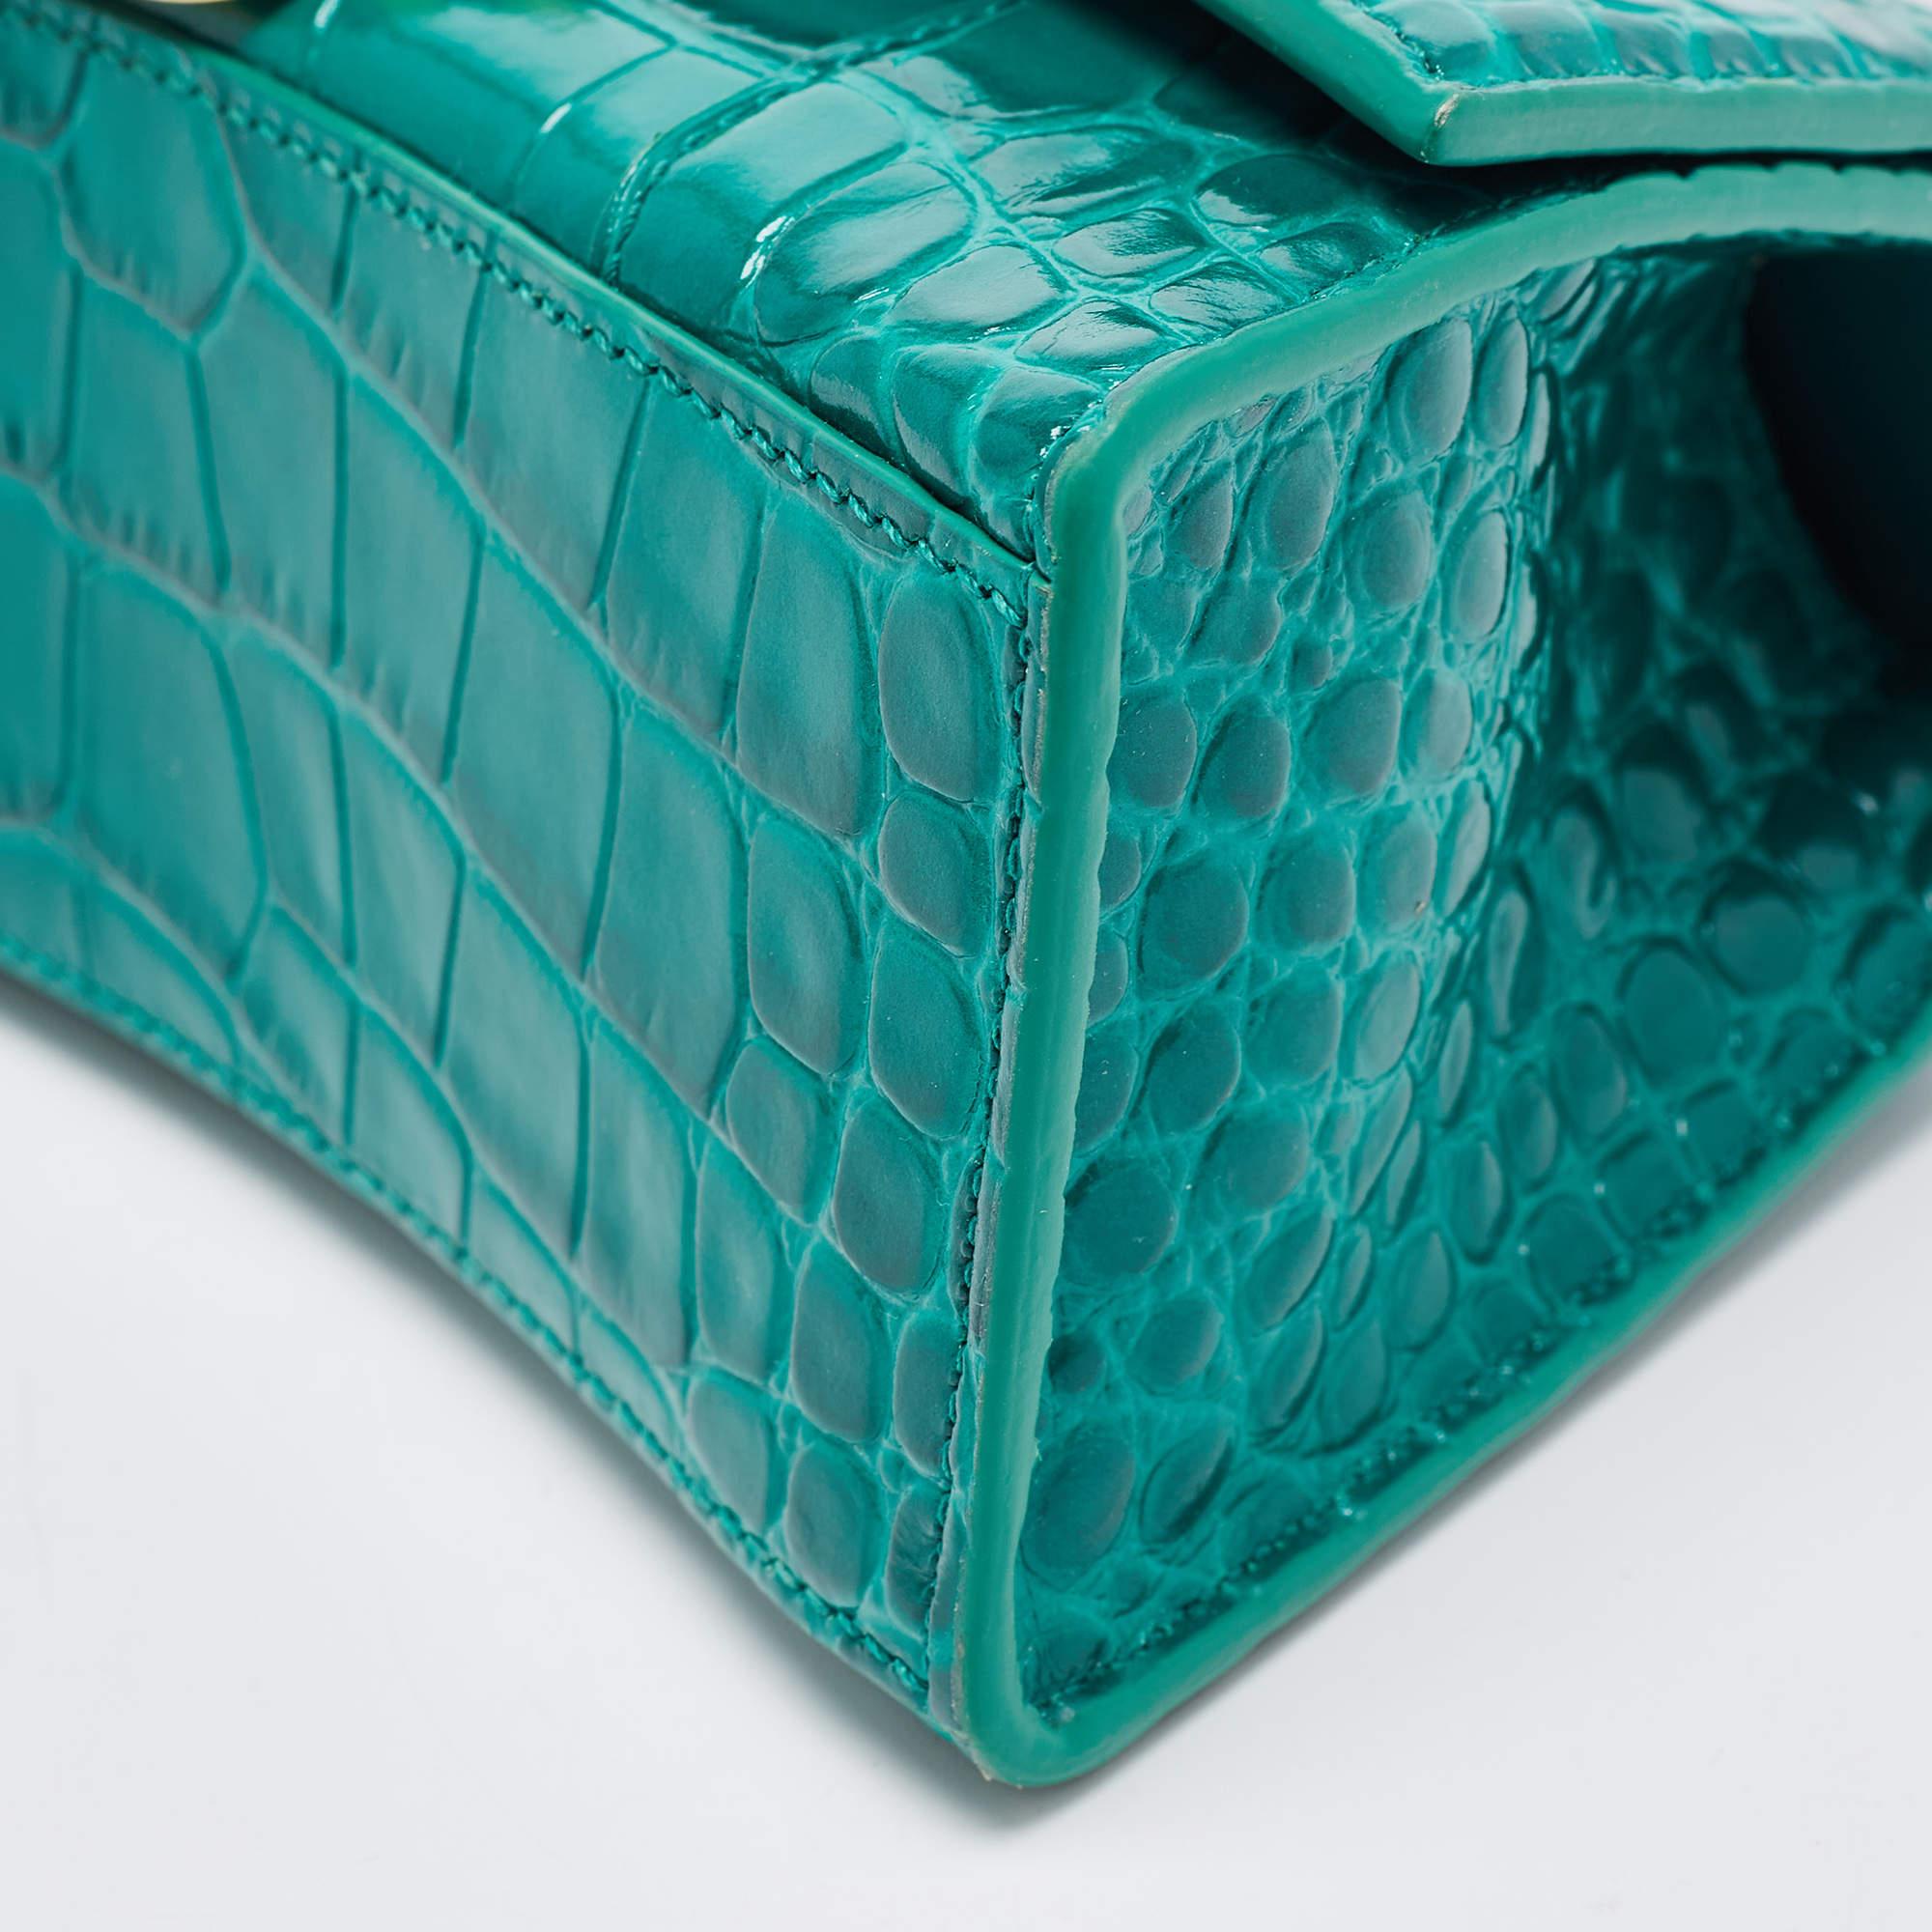 Balenciaga XS Sanduhr-Top Handle Bag aus grünem Leder mit Krokodillederprägung im Angebot 7